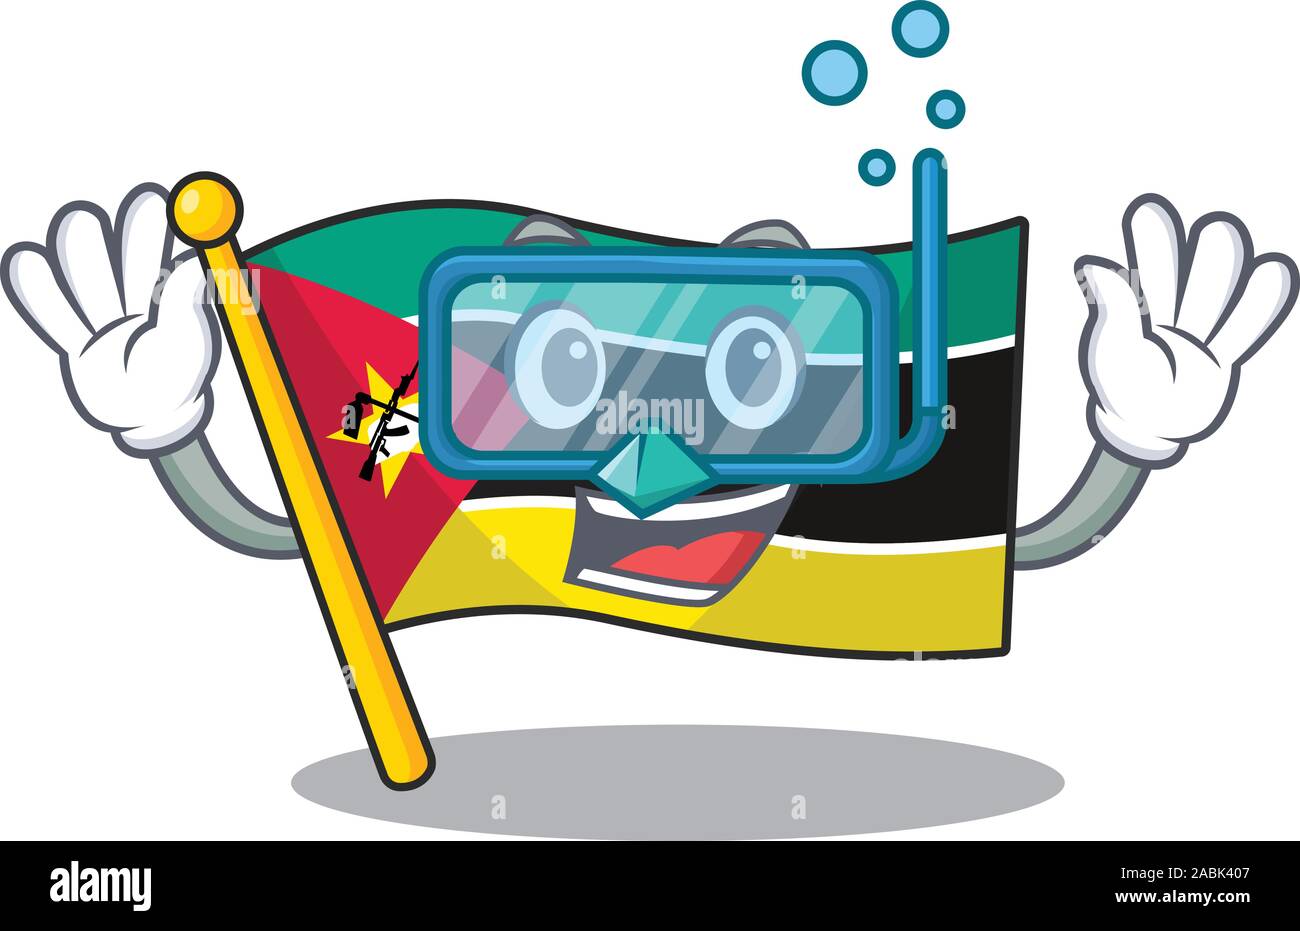 Bandera sonriente mozambique cartoon character style llevaba gafas de buceo Ilustración del Vector